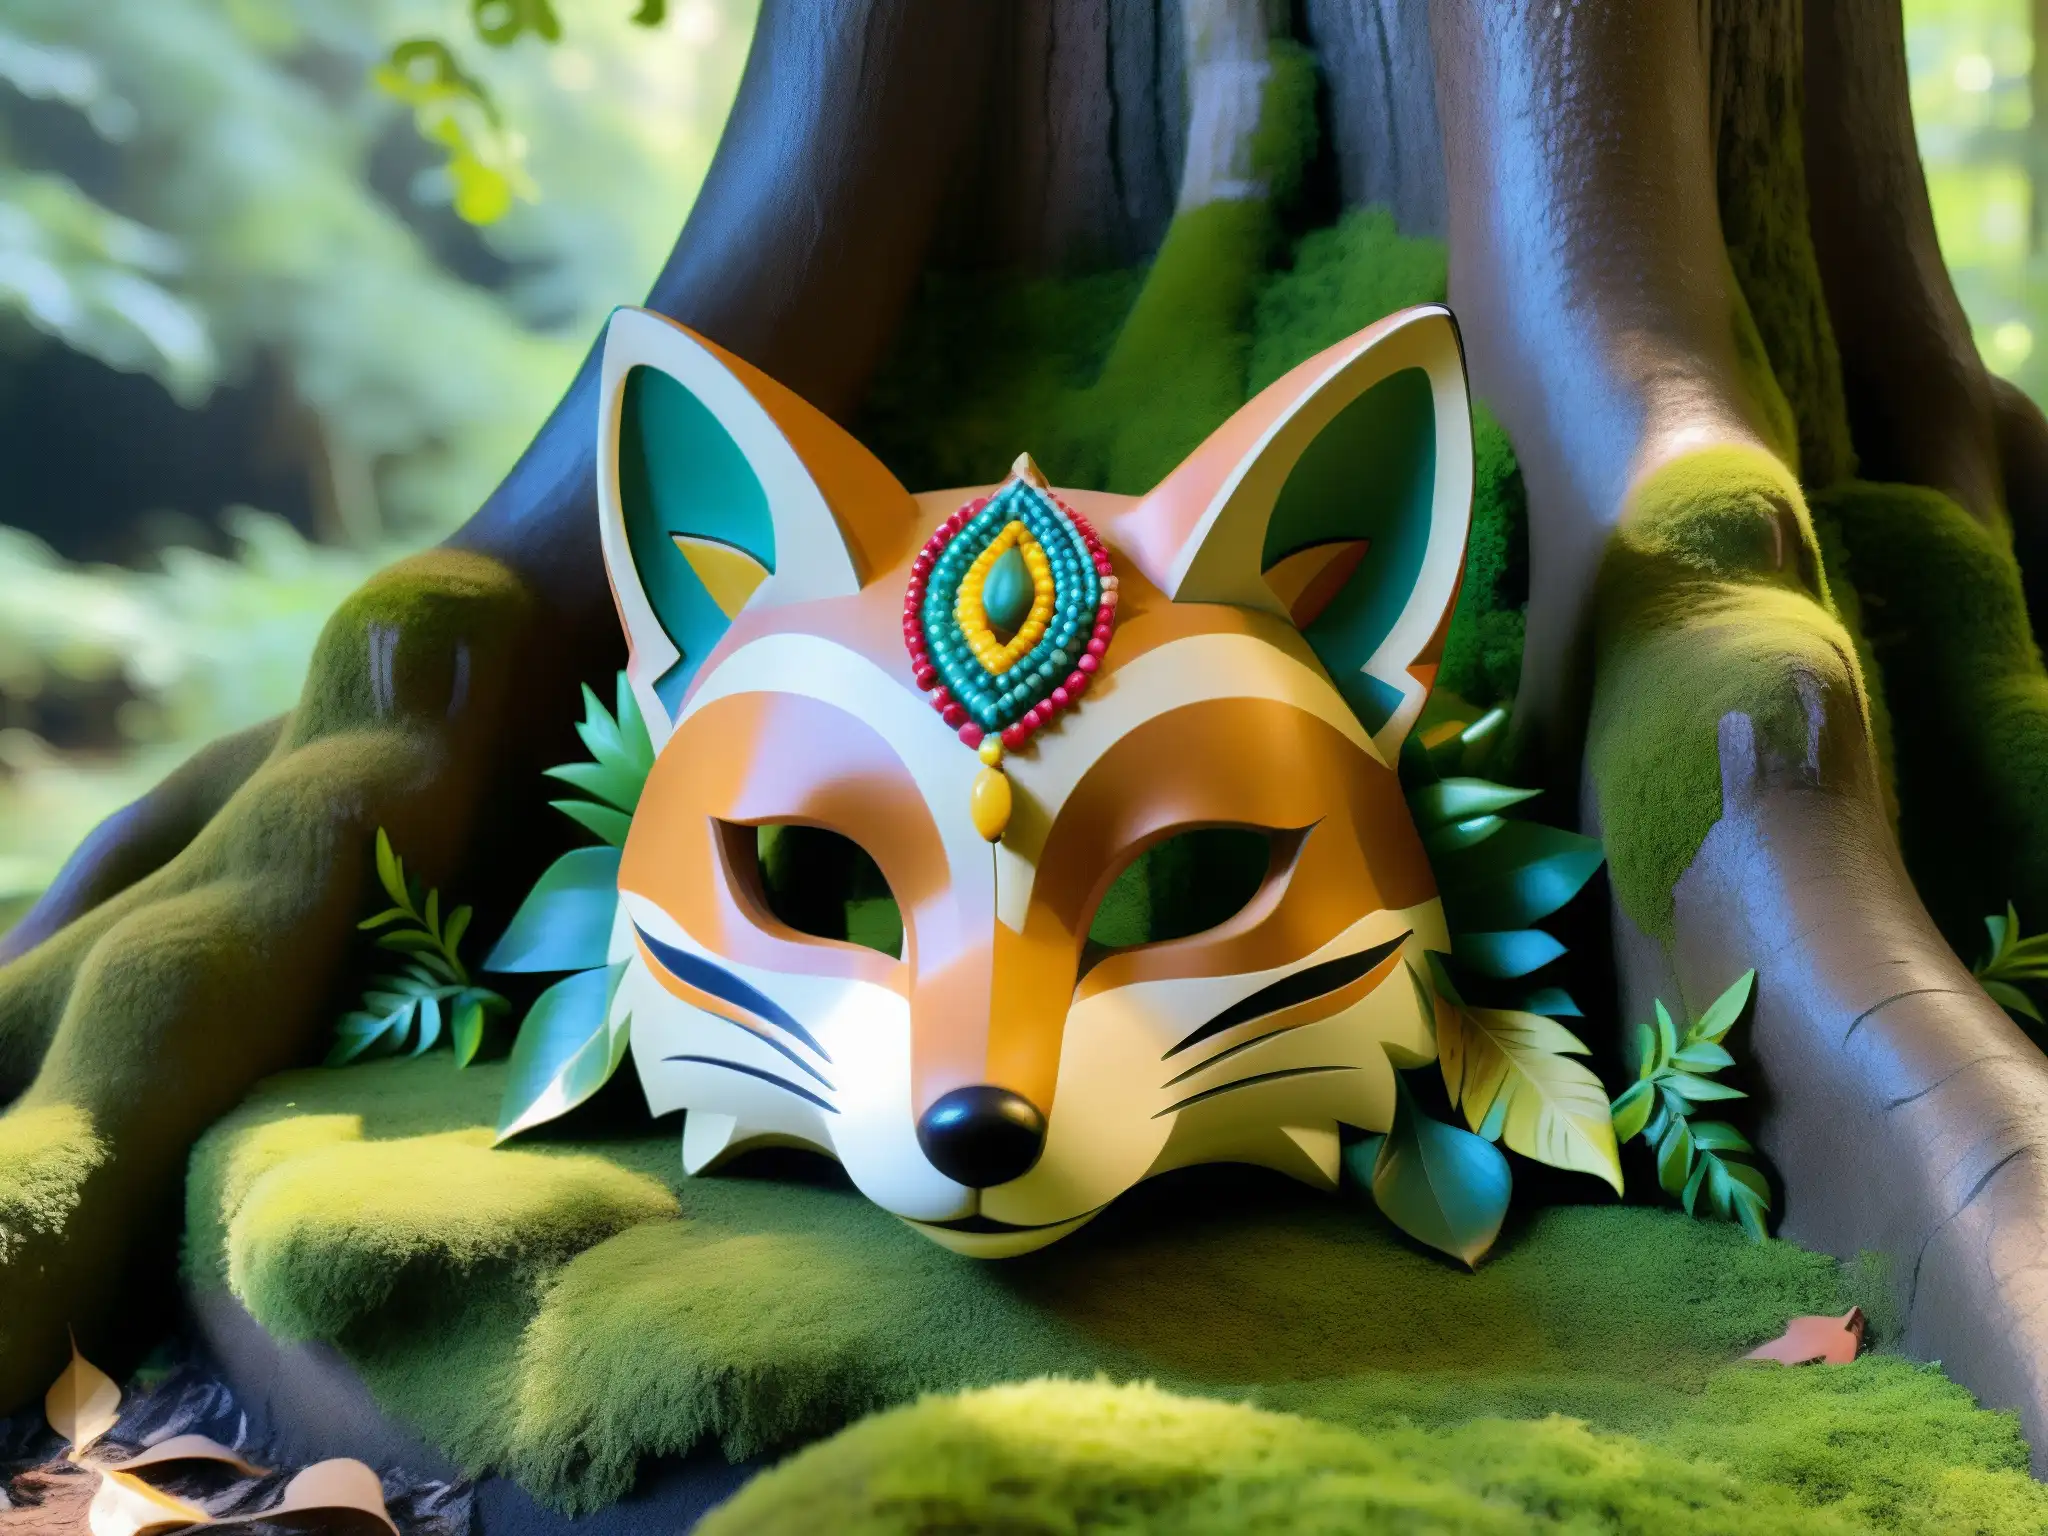 Una máscara de zorro tallada con detalle, con cuentas y plumas, reposa en una piedra cubierta de musgo en un claro de bosque sereno